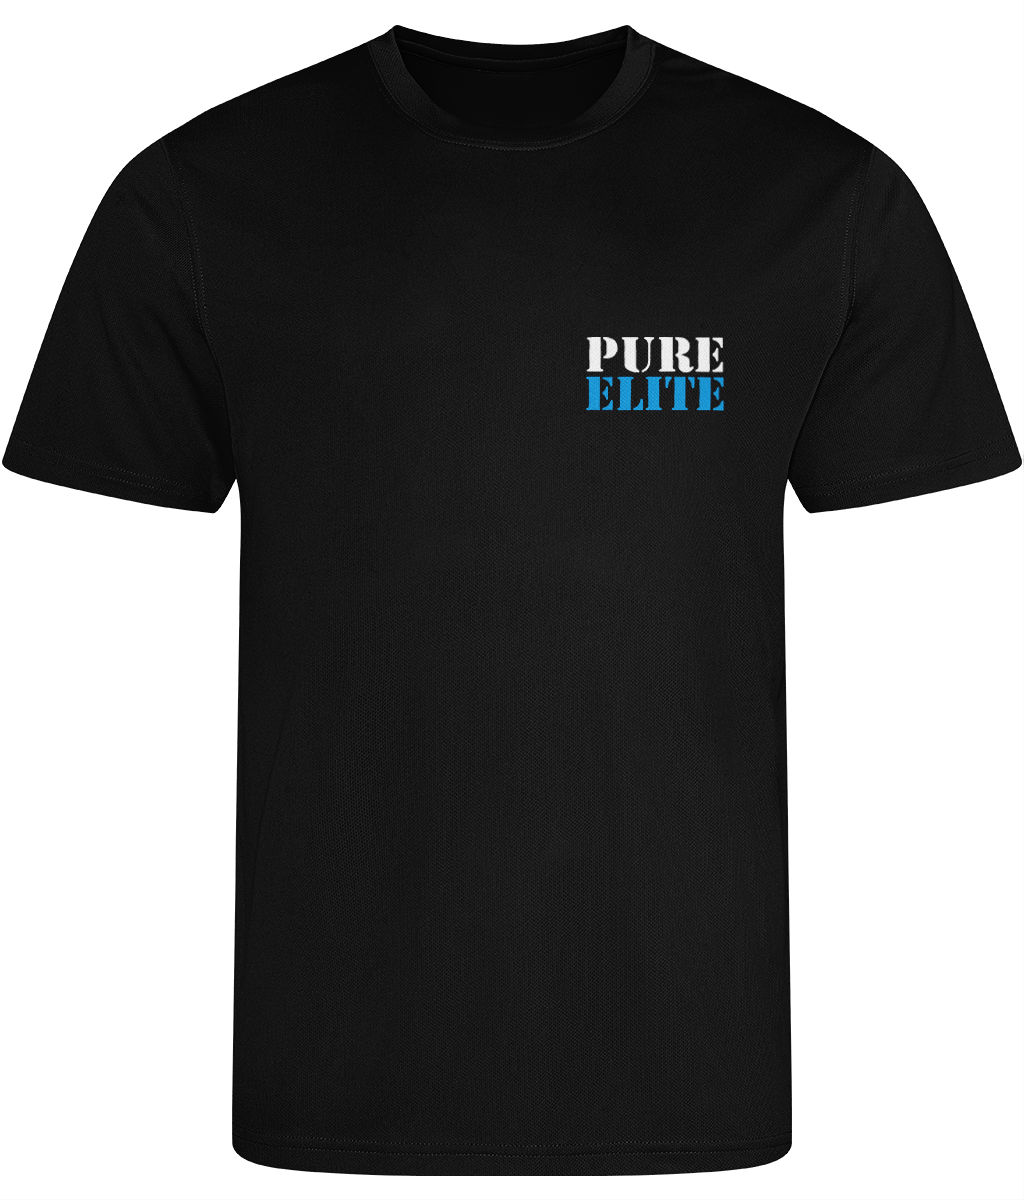 T-shirt Pure Elite Text